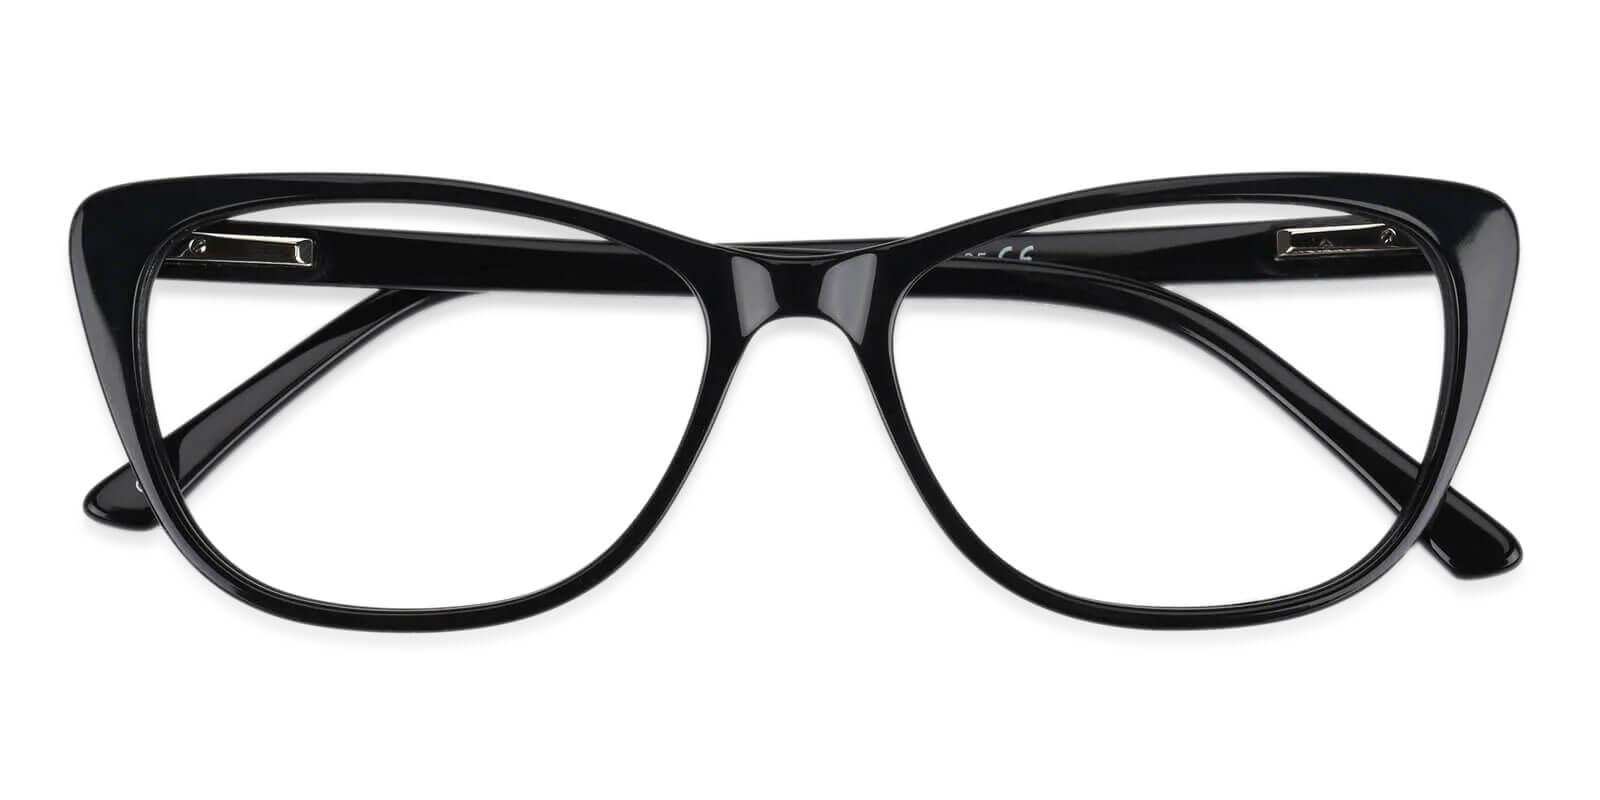 Yuke Black Acetate Eyeglasses , SpringHinges , UniversalBridgeFit Frames from ABBE Glasses